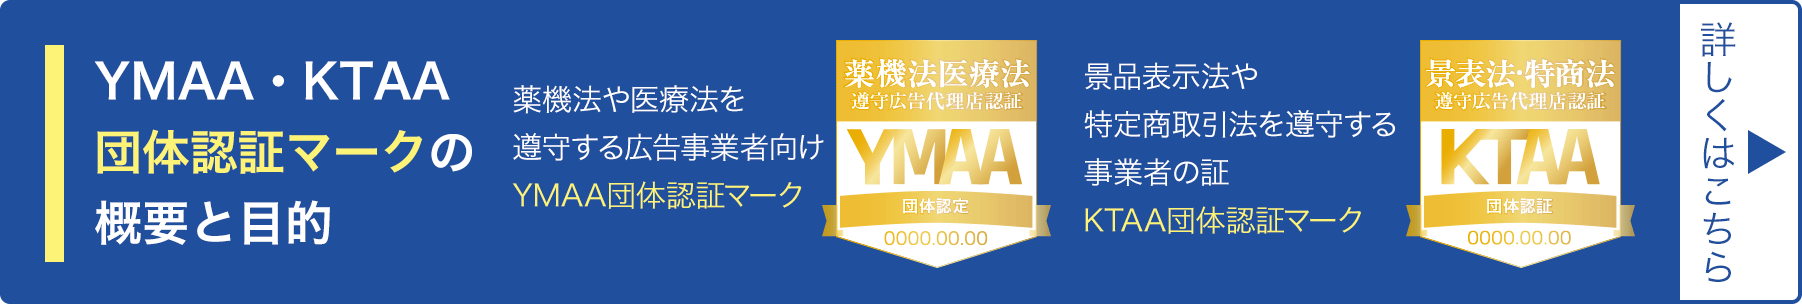 YMAA・KTAA団体認証マークの概要と目的